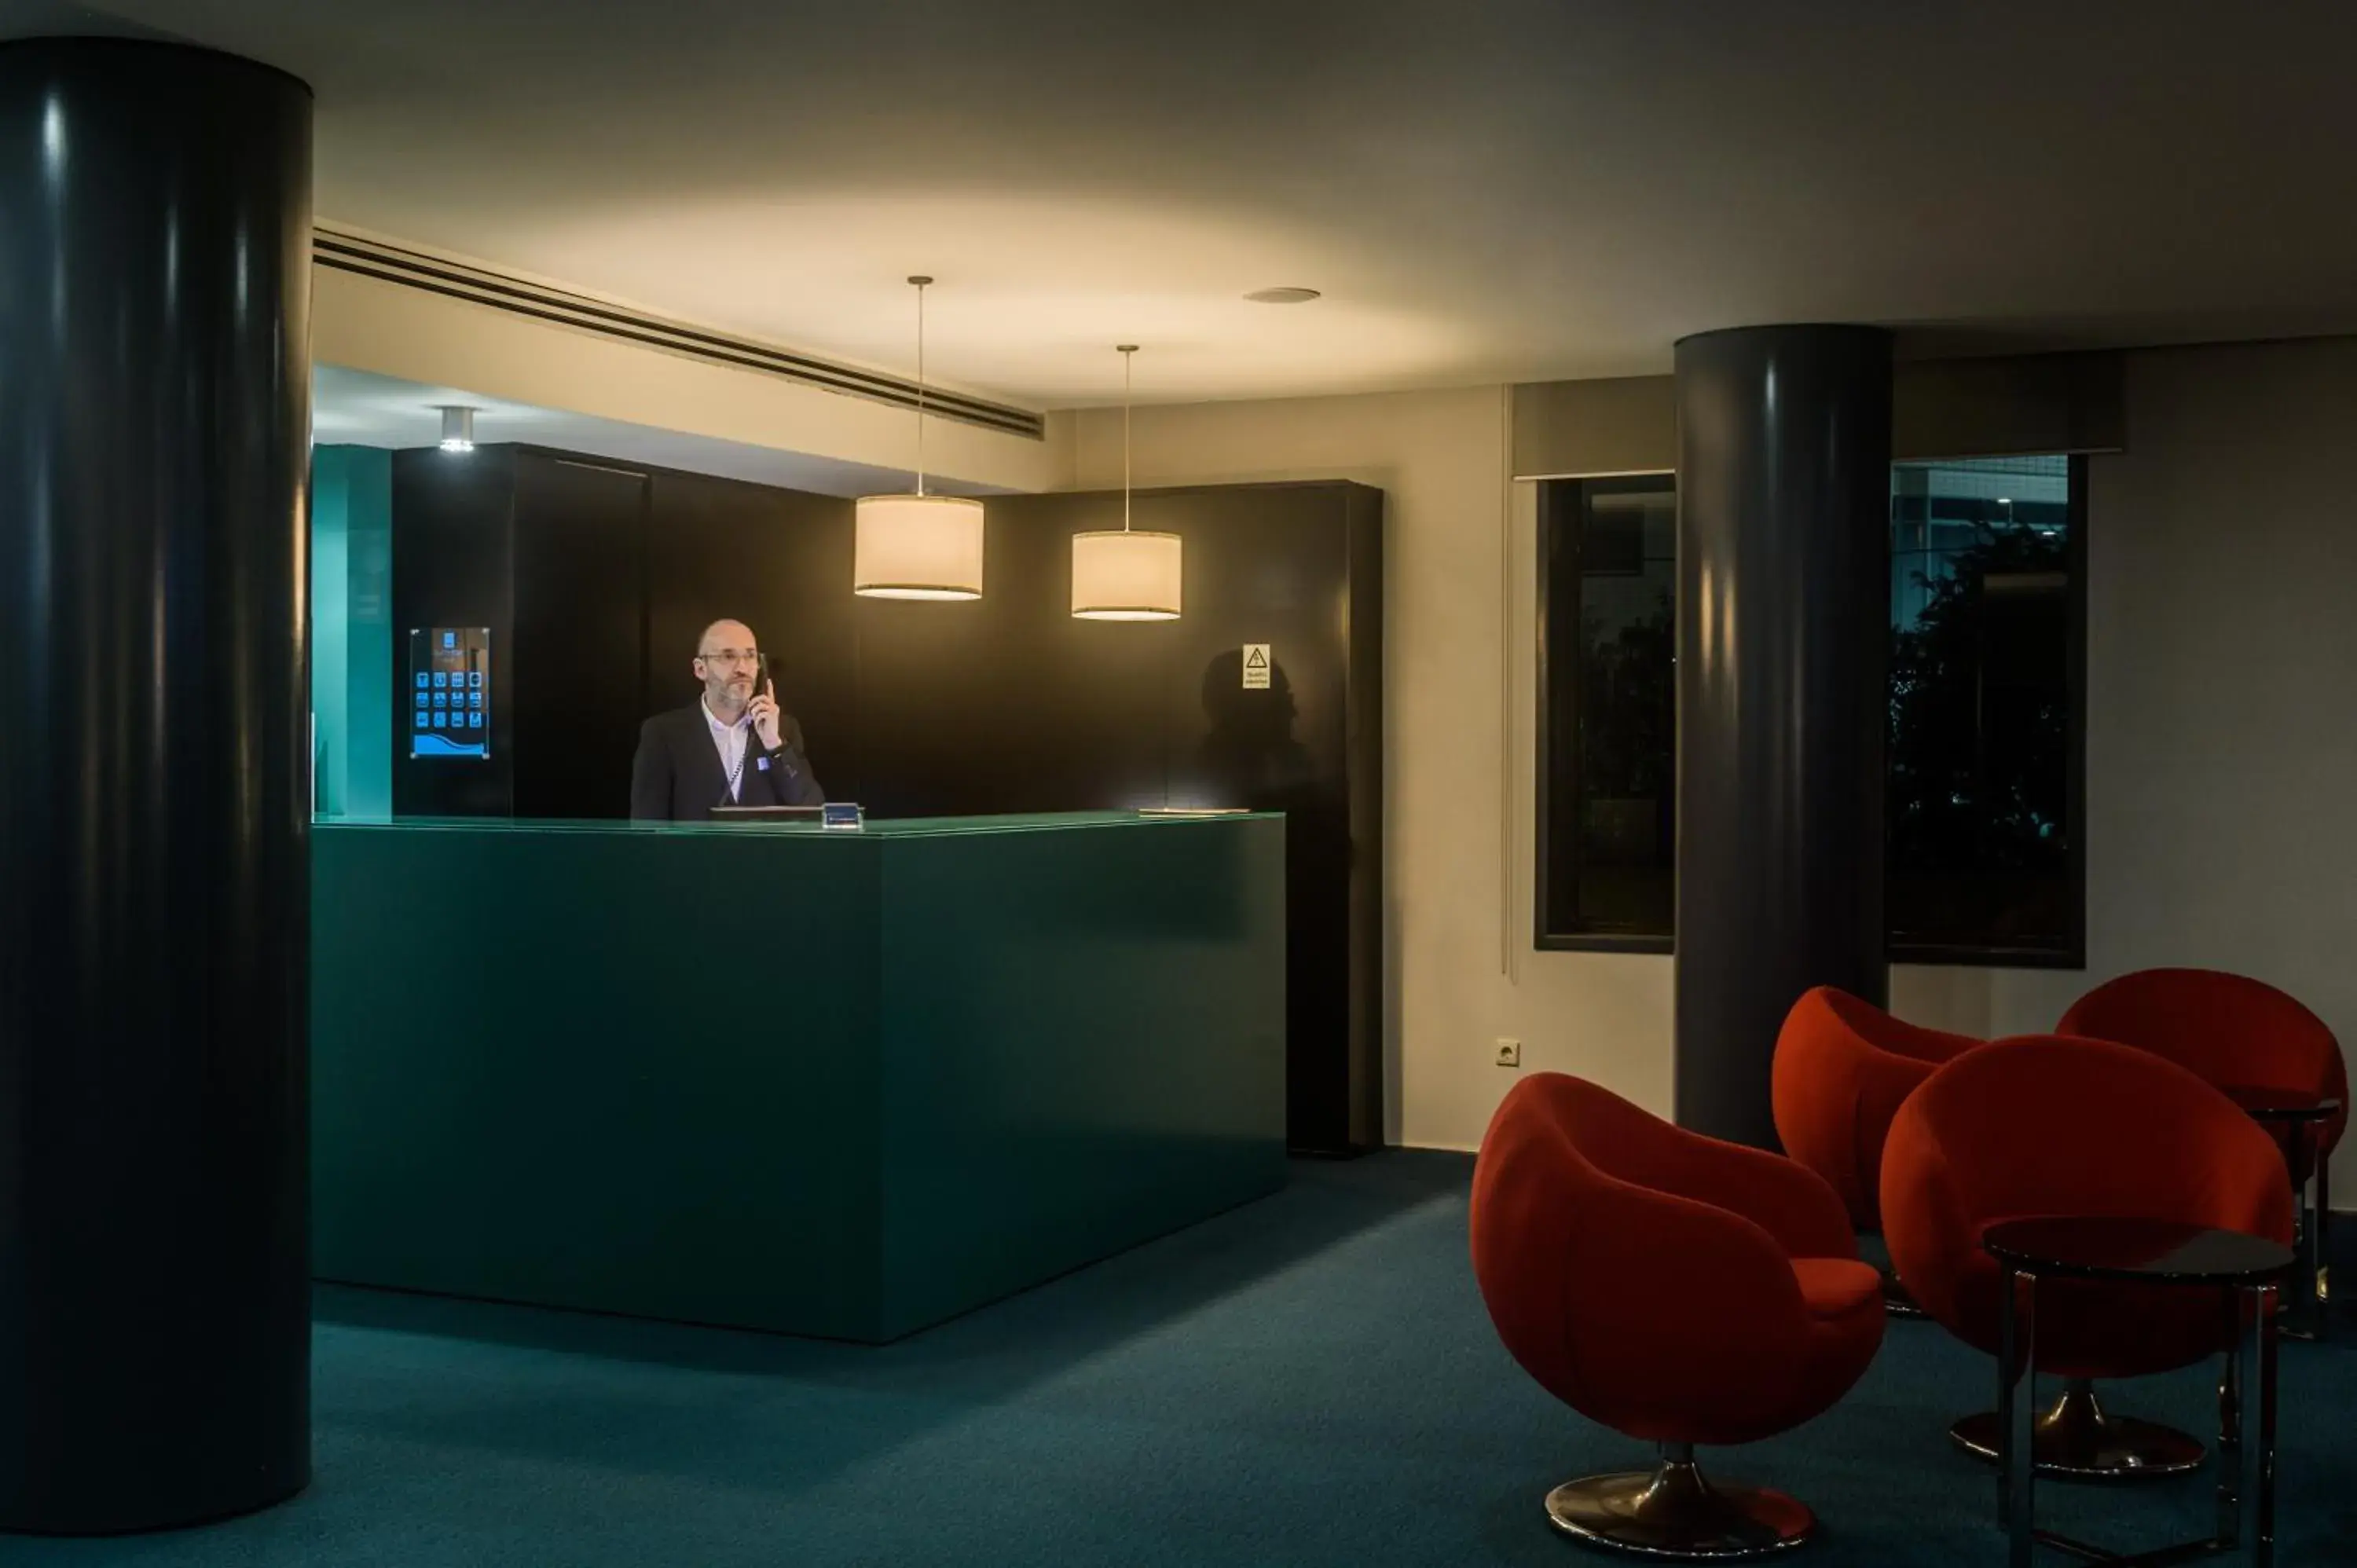 Lobby or reception, Lobby/Reception in Hotel Torre Mar